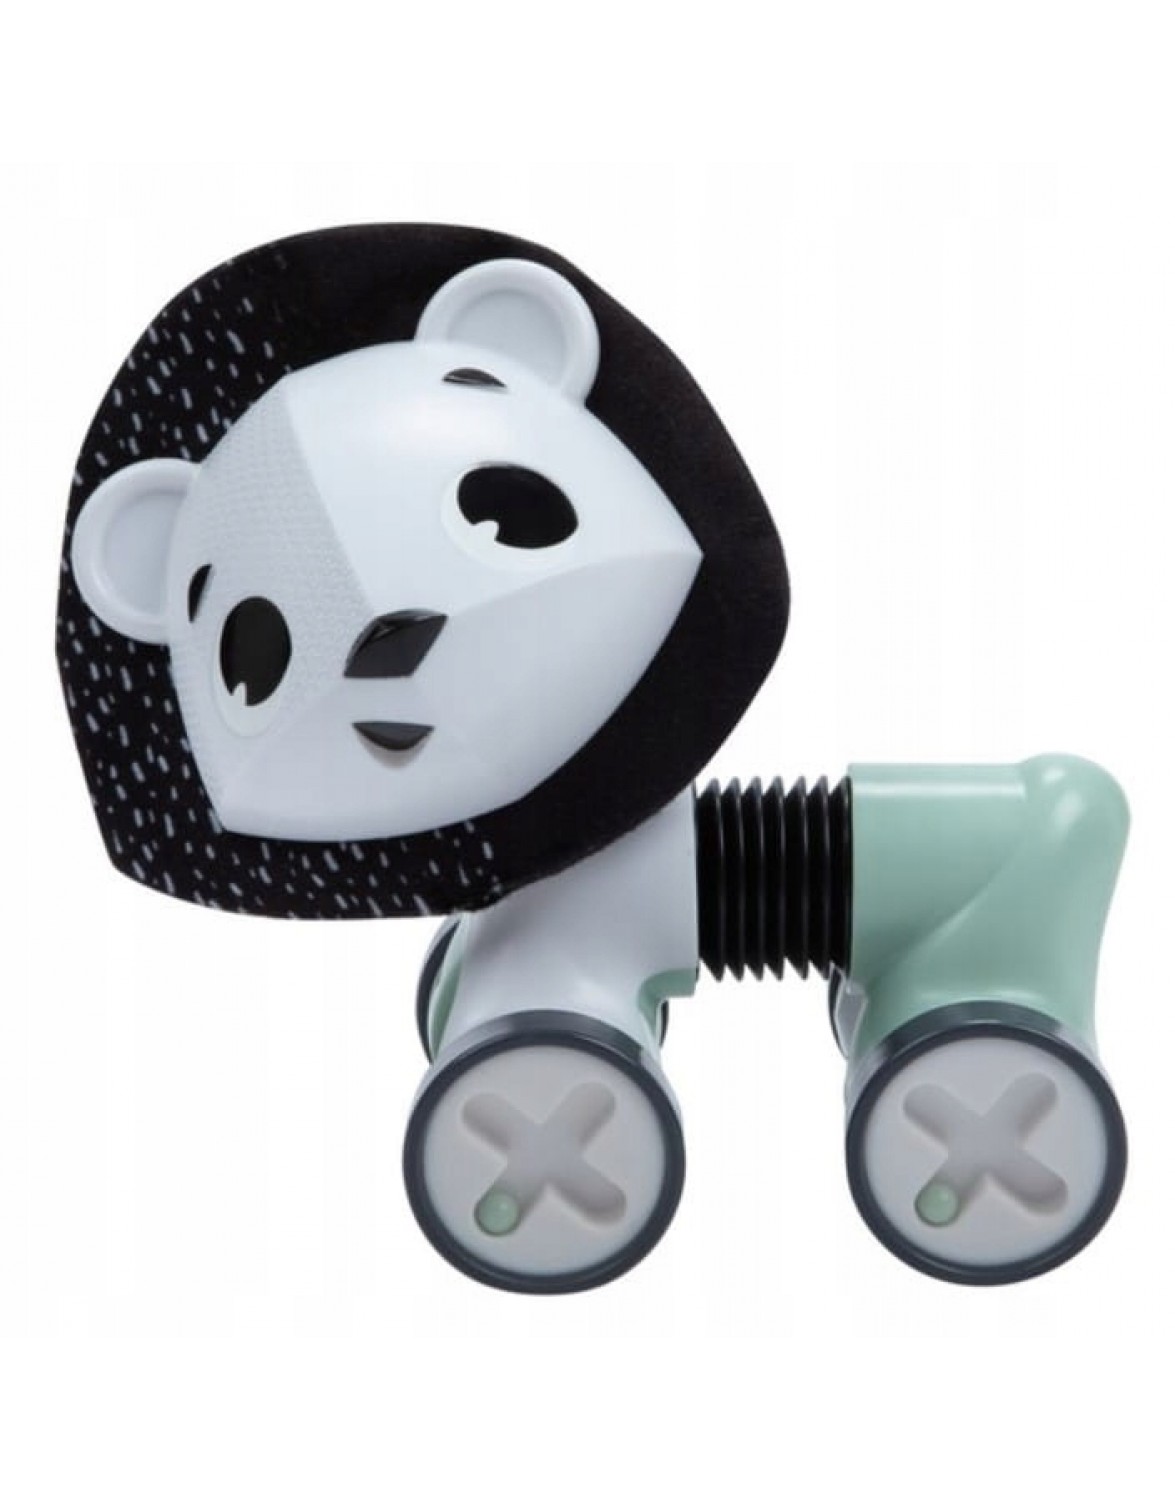 TINY LOVE інтерактивна іграшка Лев ущелині декор чорний і білий. TINY LOVE інтерактивна дитяча іграшка Лев Джордж декор 3m+